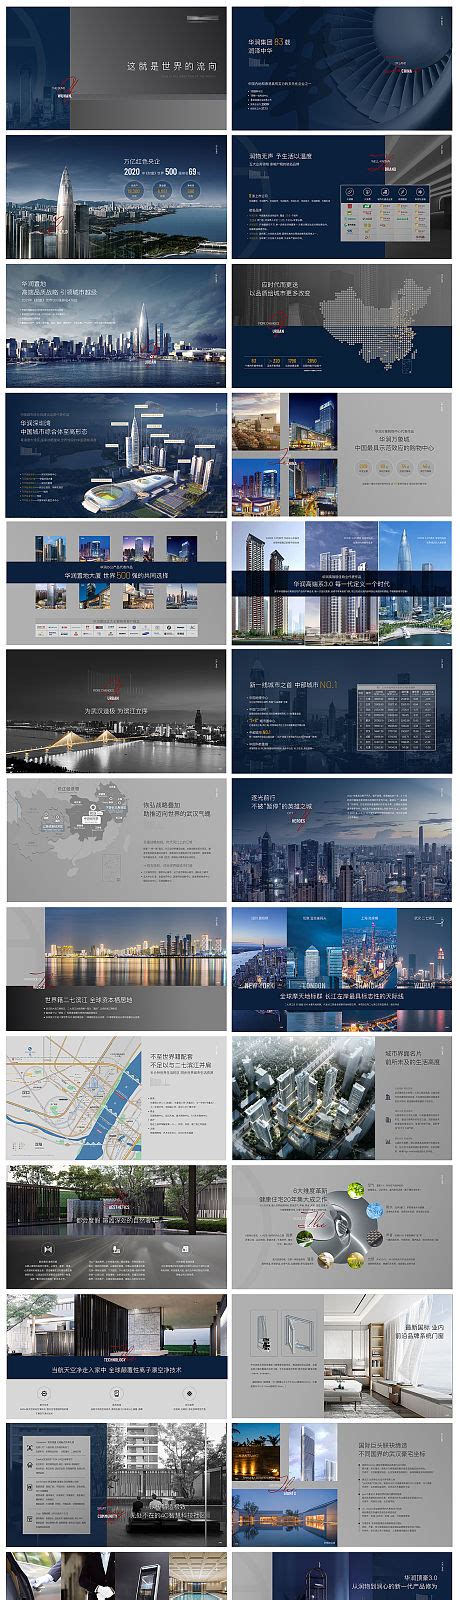 高端房地产广告设计海报PSD素材免费下载_红动中国